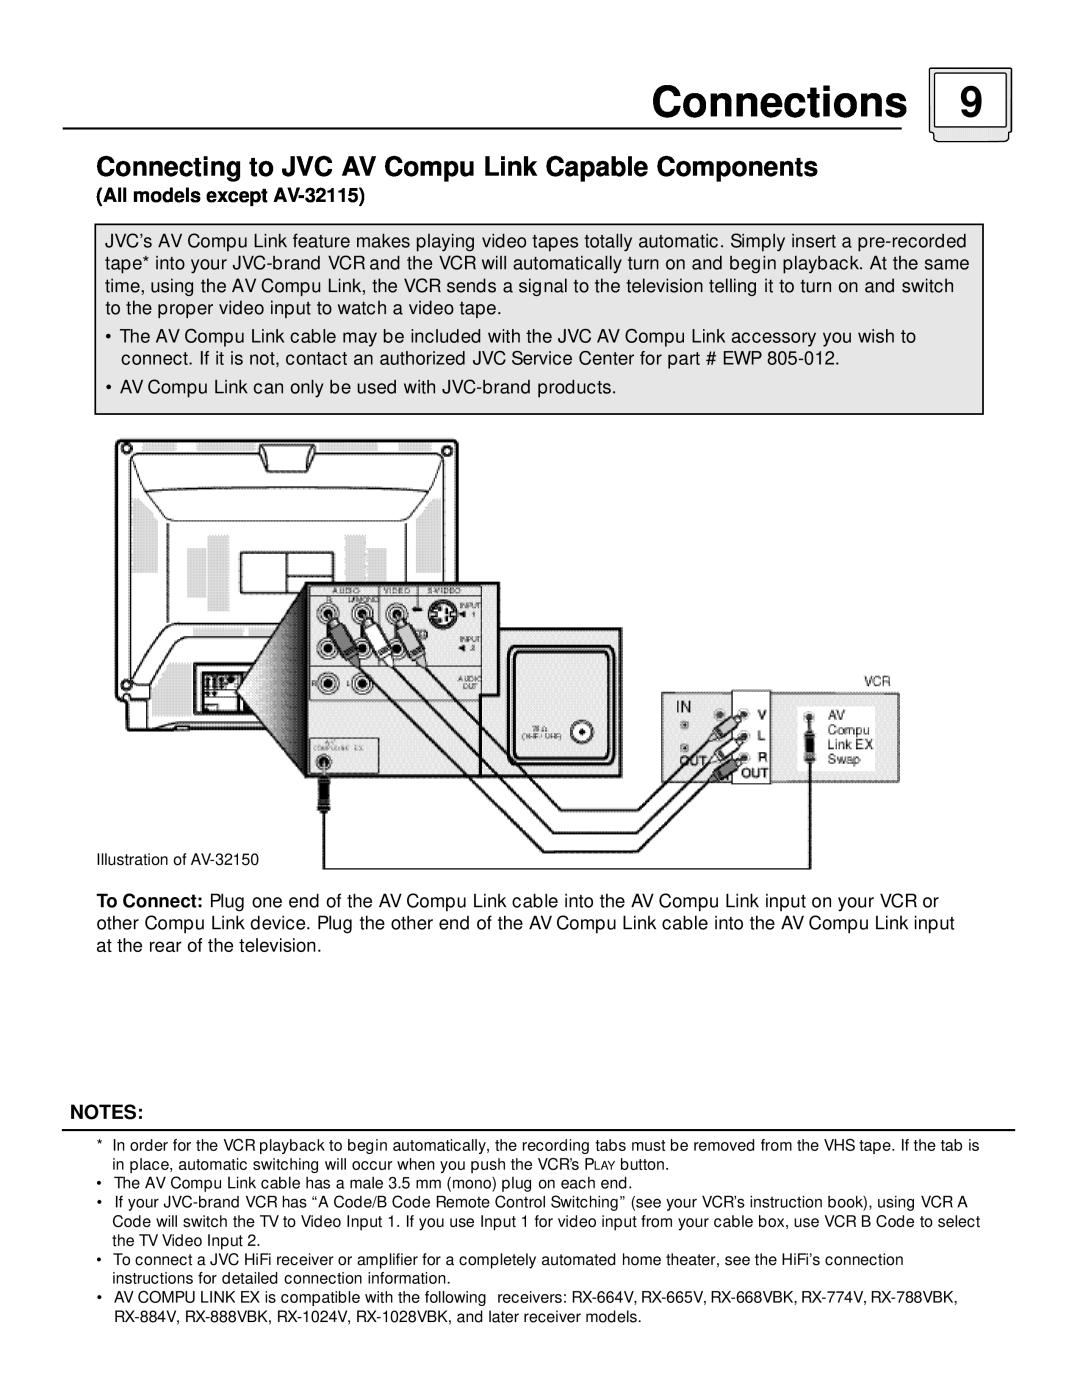 JVC AV 32150, AV 36120 manual Connecting to JVC AV Compu Link Capable Components, All models except AV-32115, Connections 